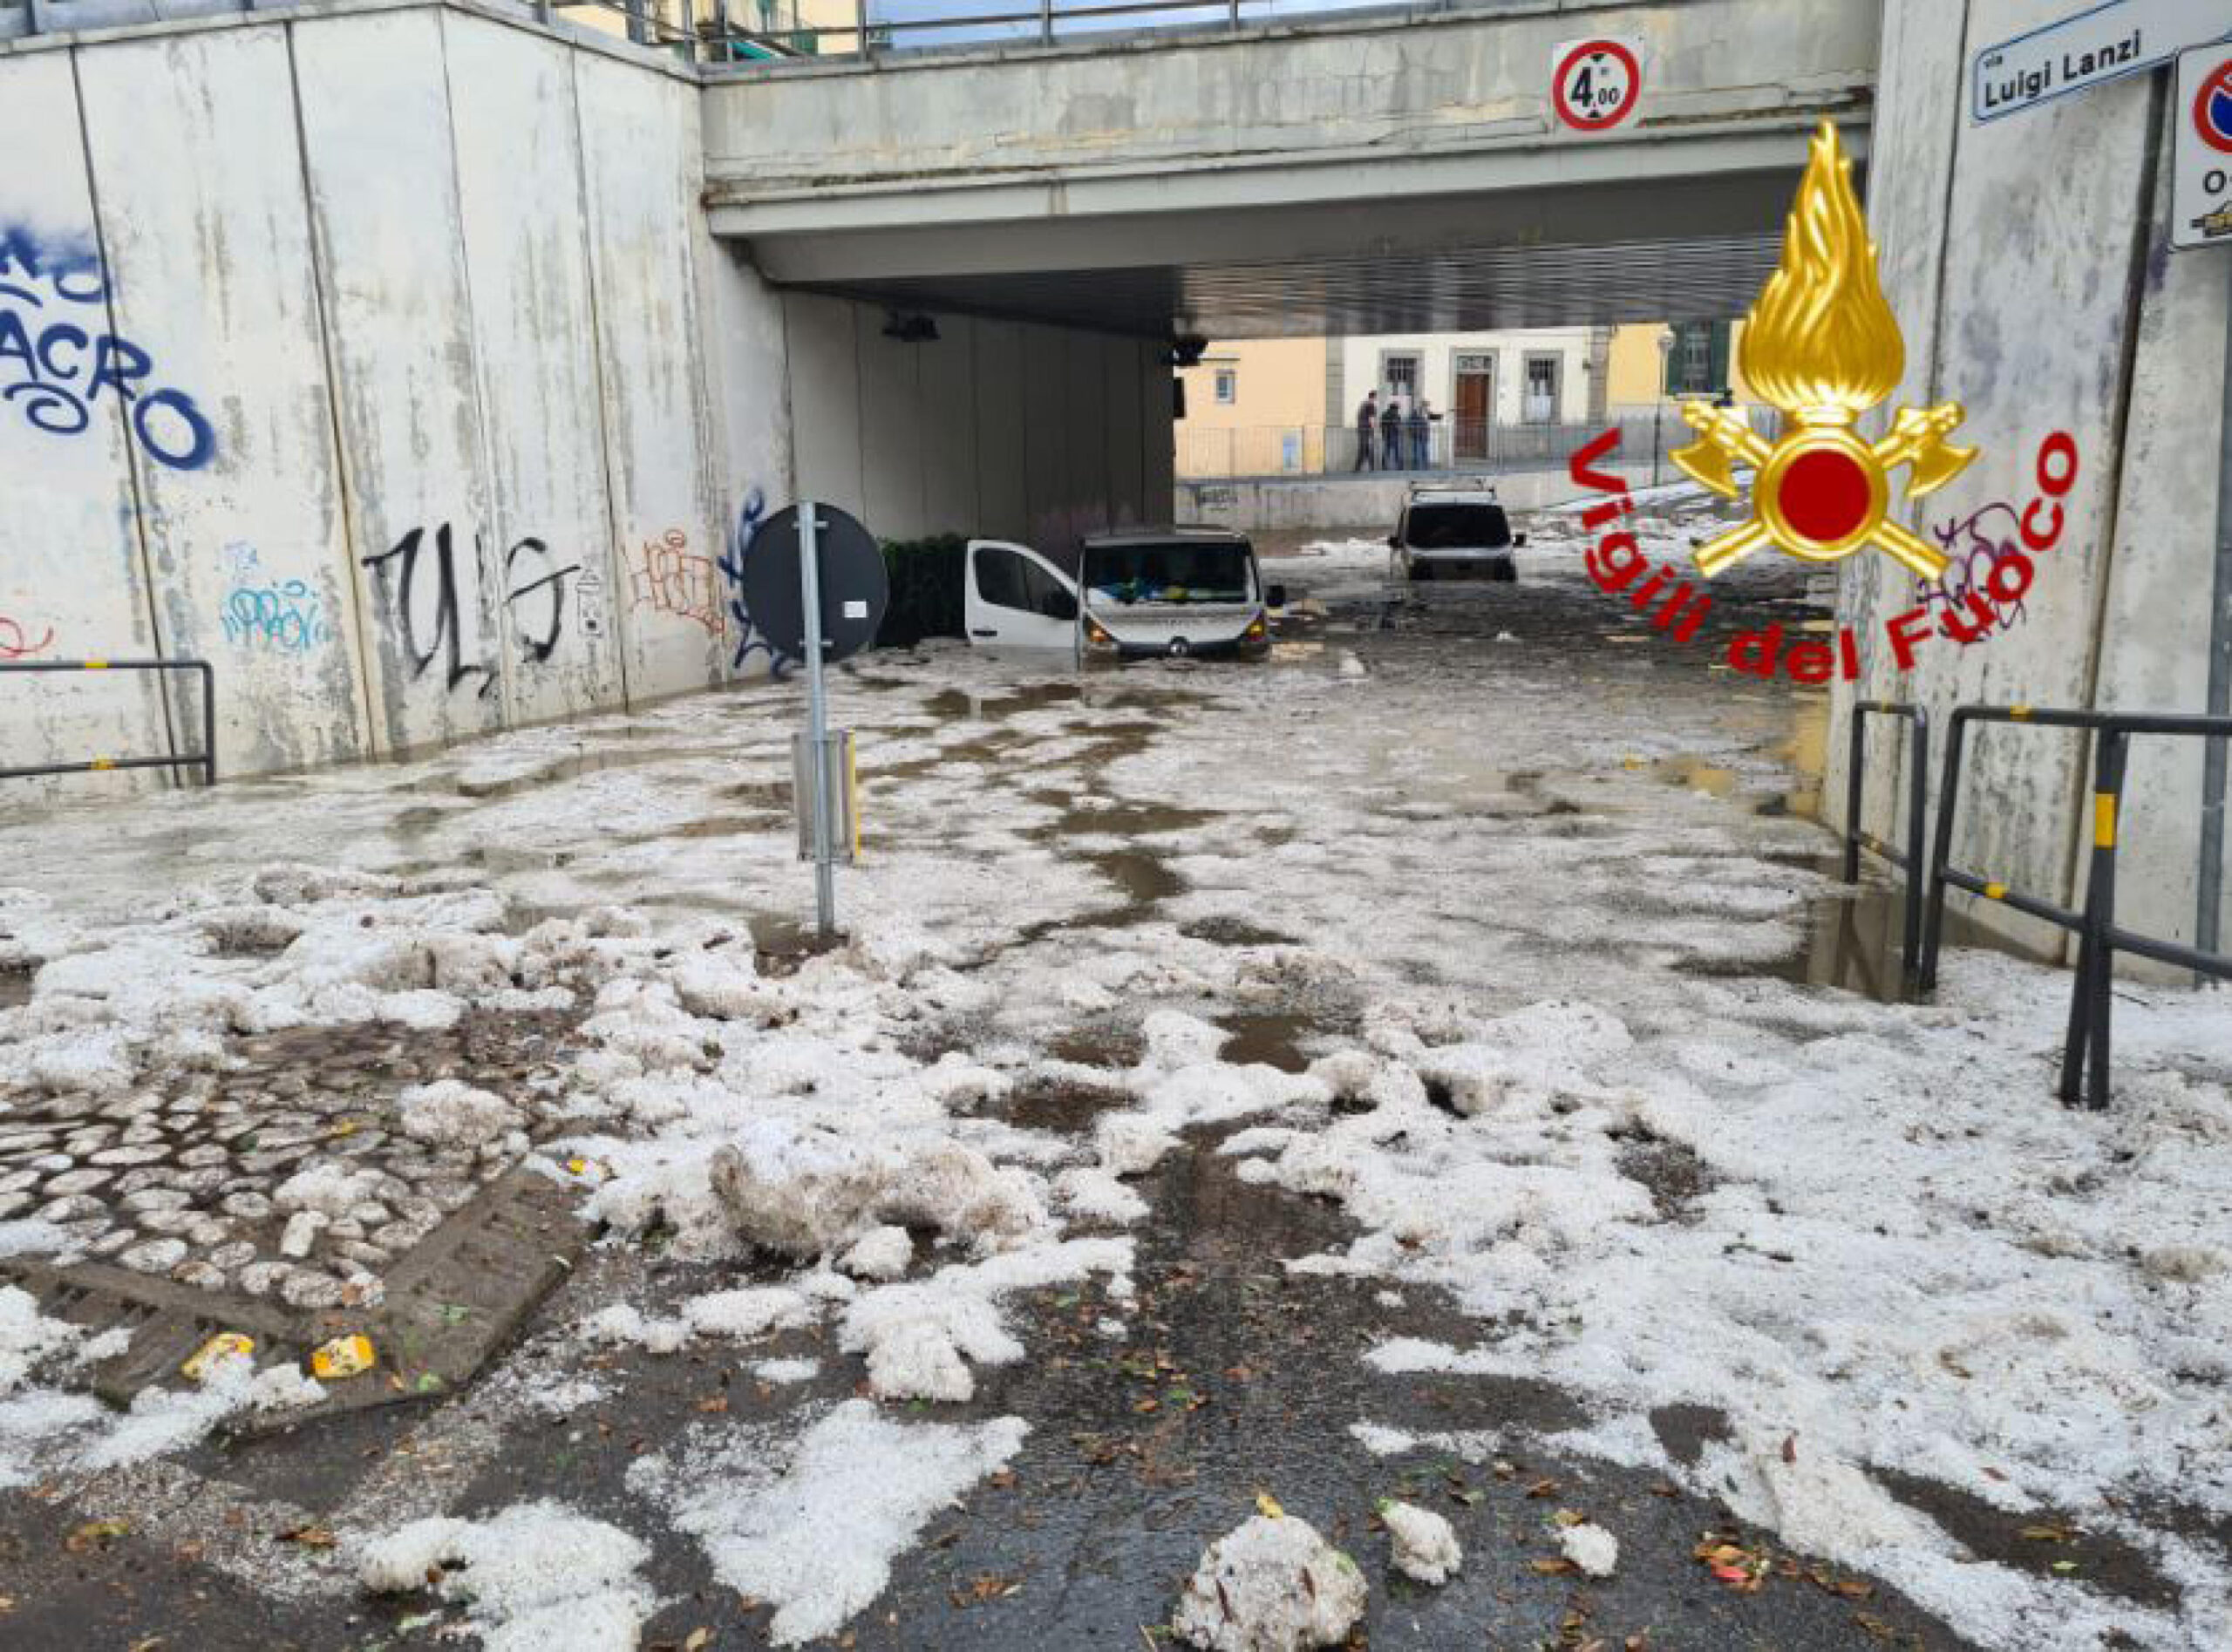 Bomba d'acqua a Firenze, mezzi sommersi in sottopasso